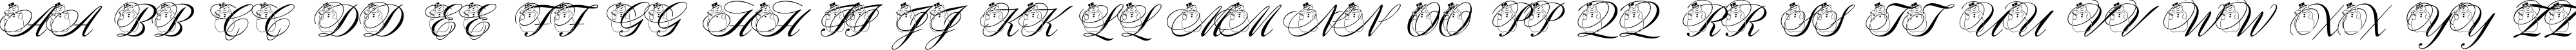 Пример написания английского алфавита шрифтом pf_snowman citadel